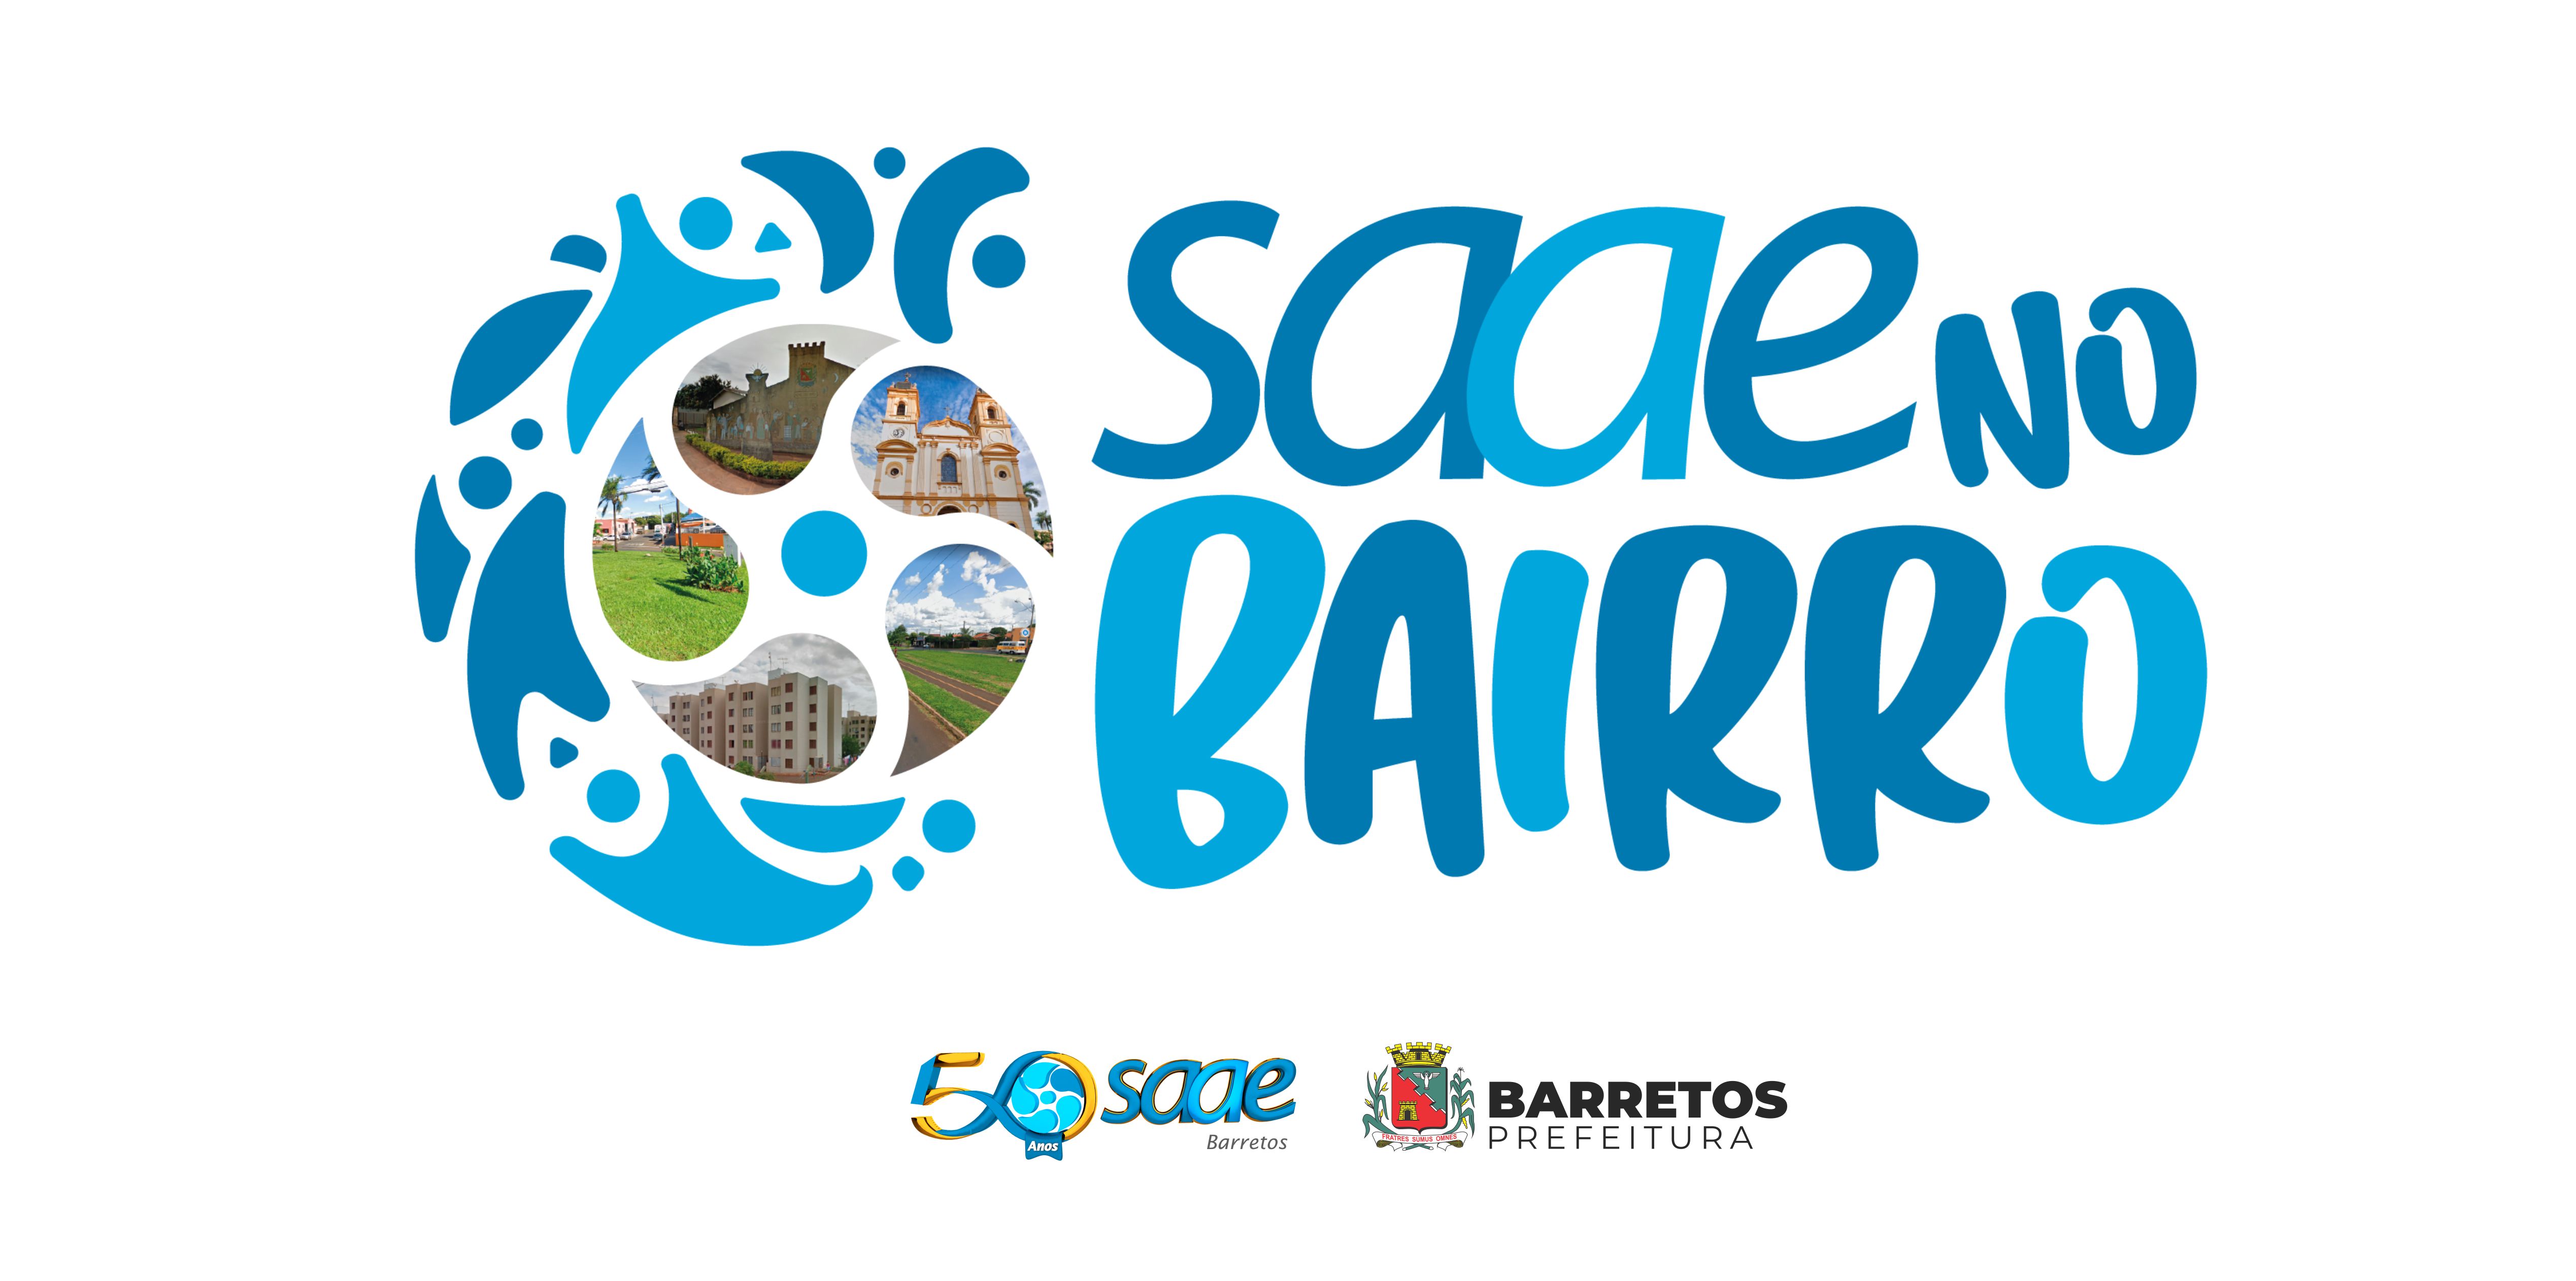 1ª edição do SAAE no Bairro acontece nos dias 25 e 26 no Residencial Luís Spina